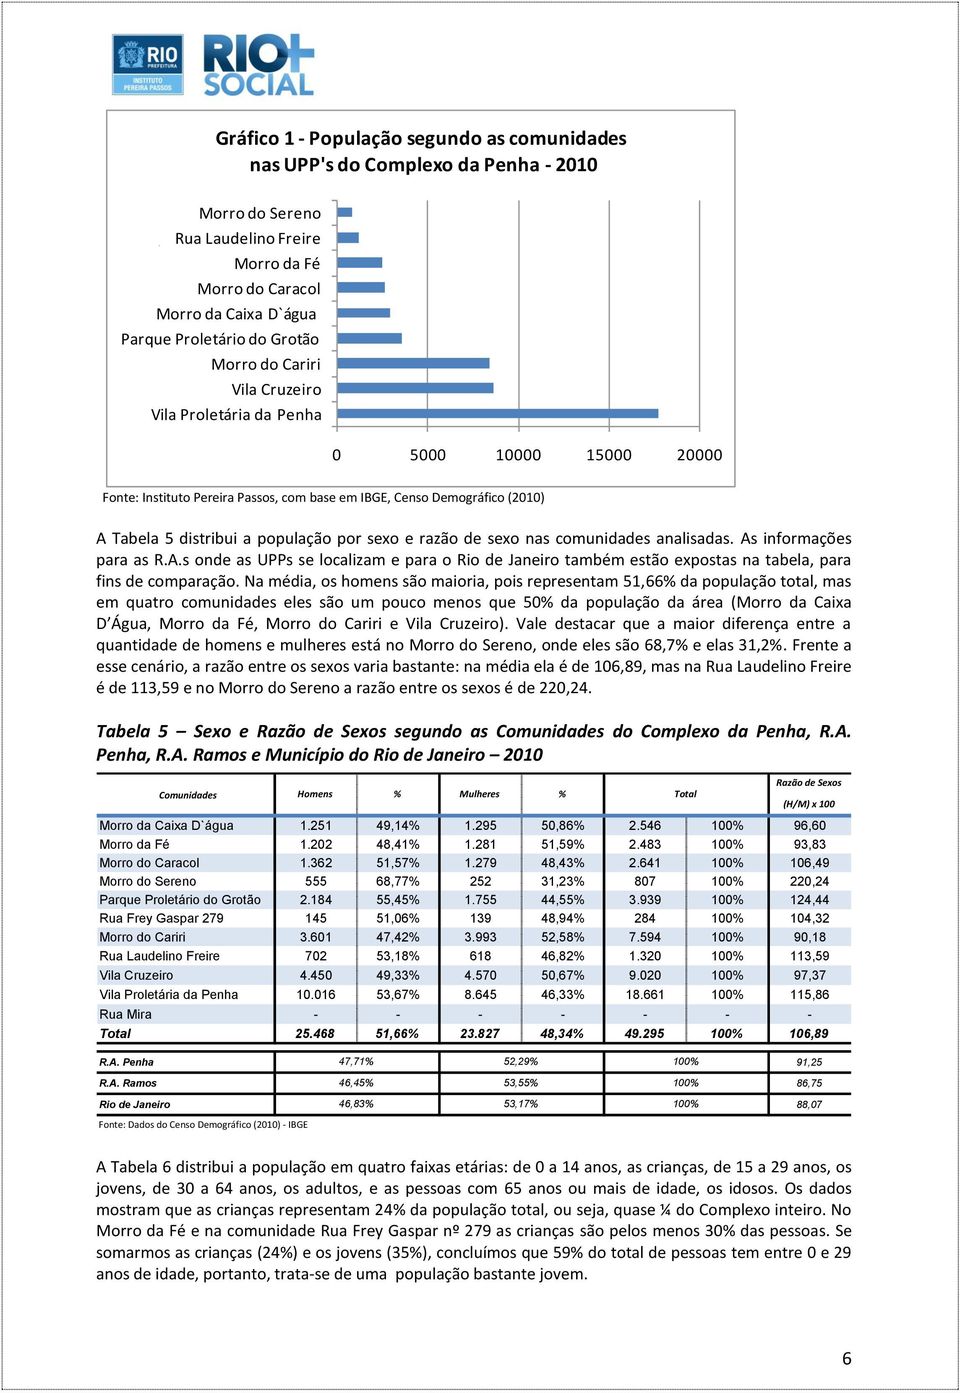 razão de sexo nas comunidades analisadas. As informações para as R.A.s onde as UPPs se localizam e para o Rio de Janeiro também estão expostas na tabela, para fins de comparação.